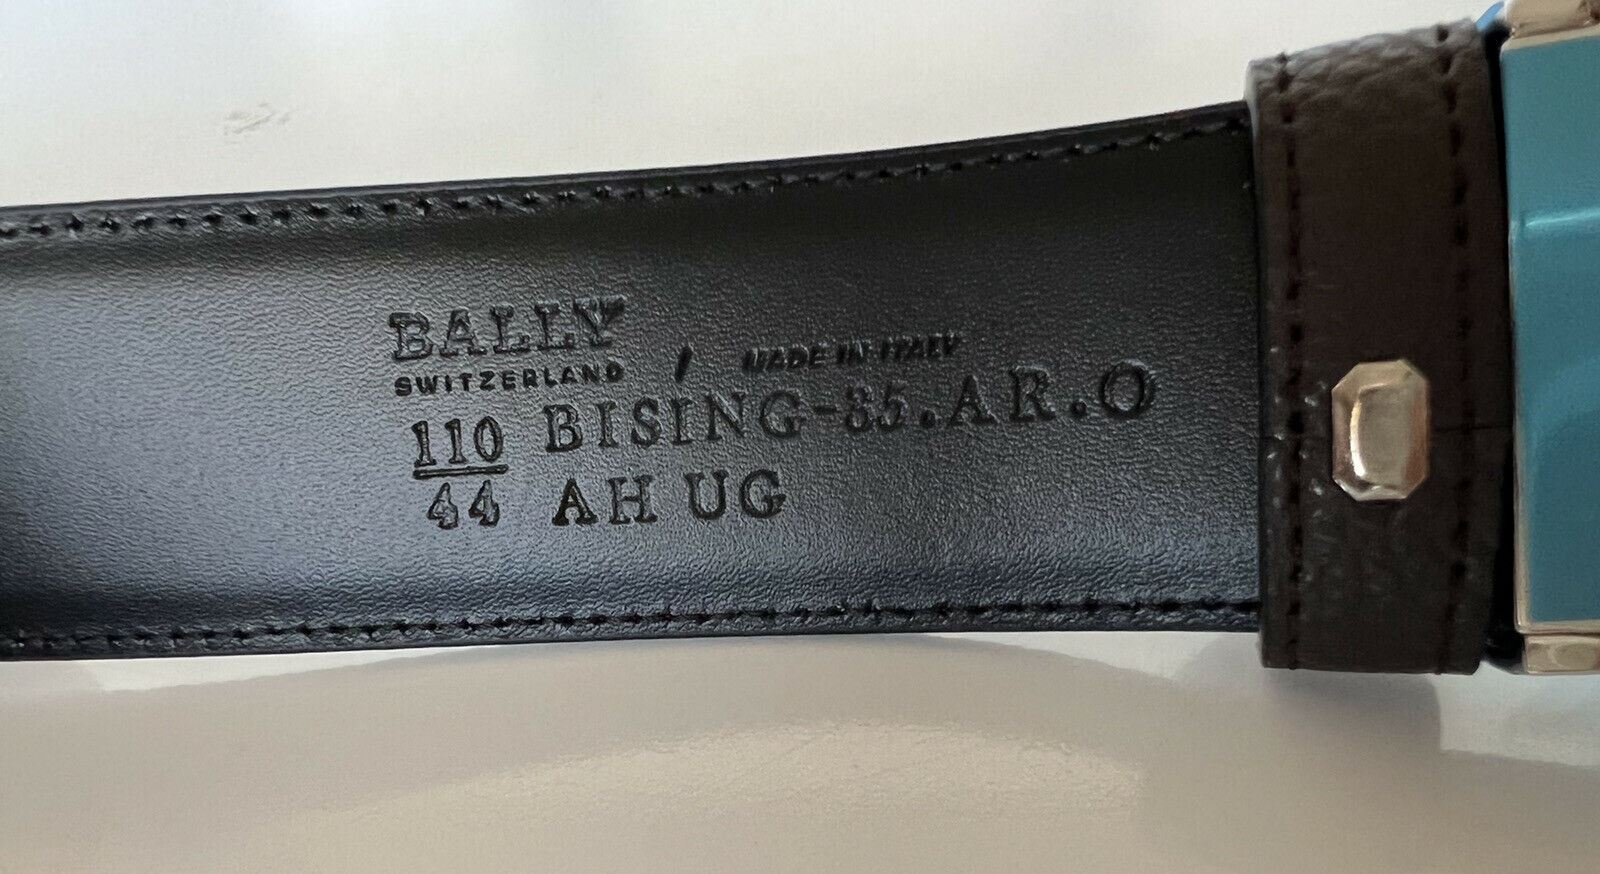 Мужской двухсторонний кожаный ремень Bally Bally стоимостью 290 долларов США, размер 44/110 